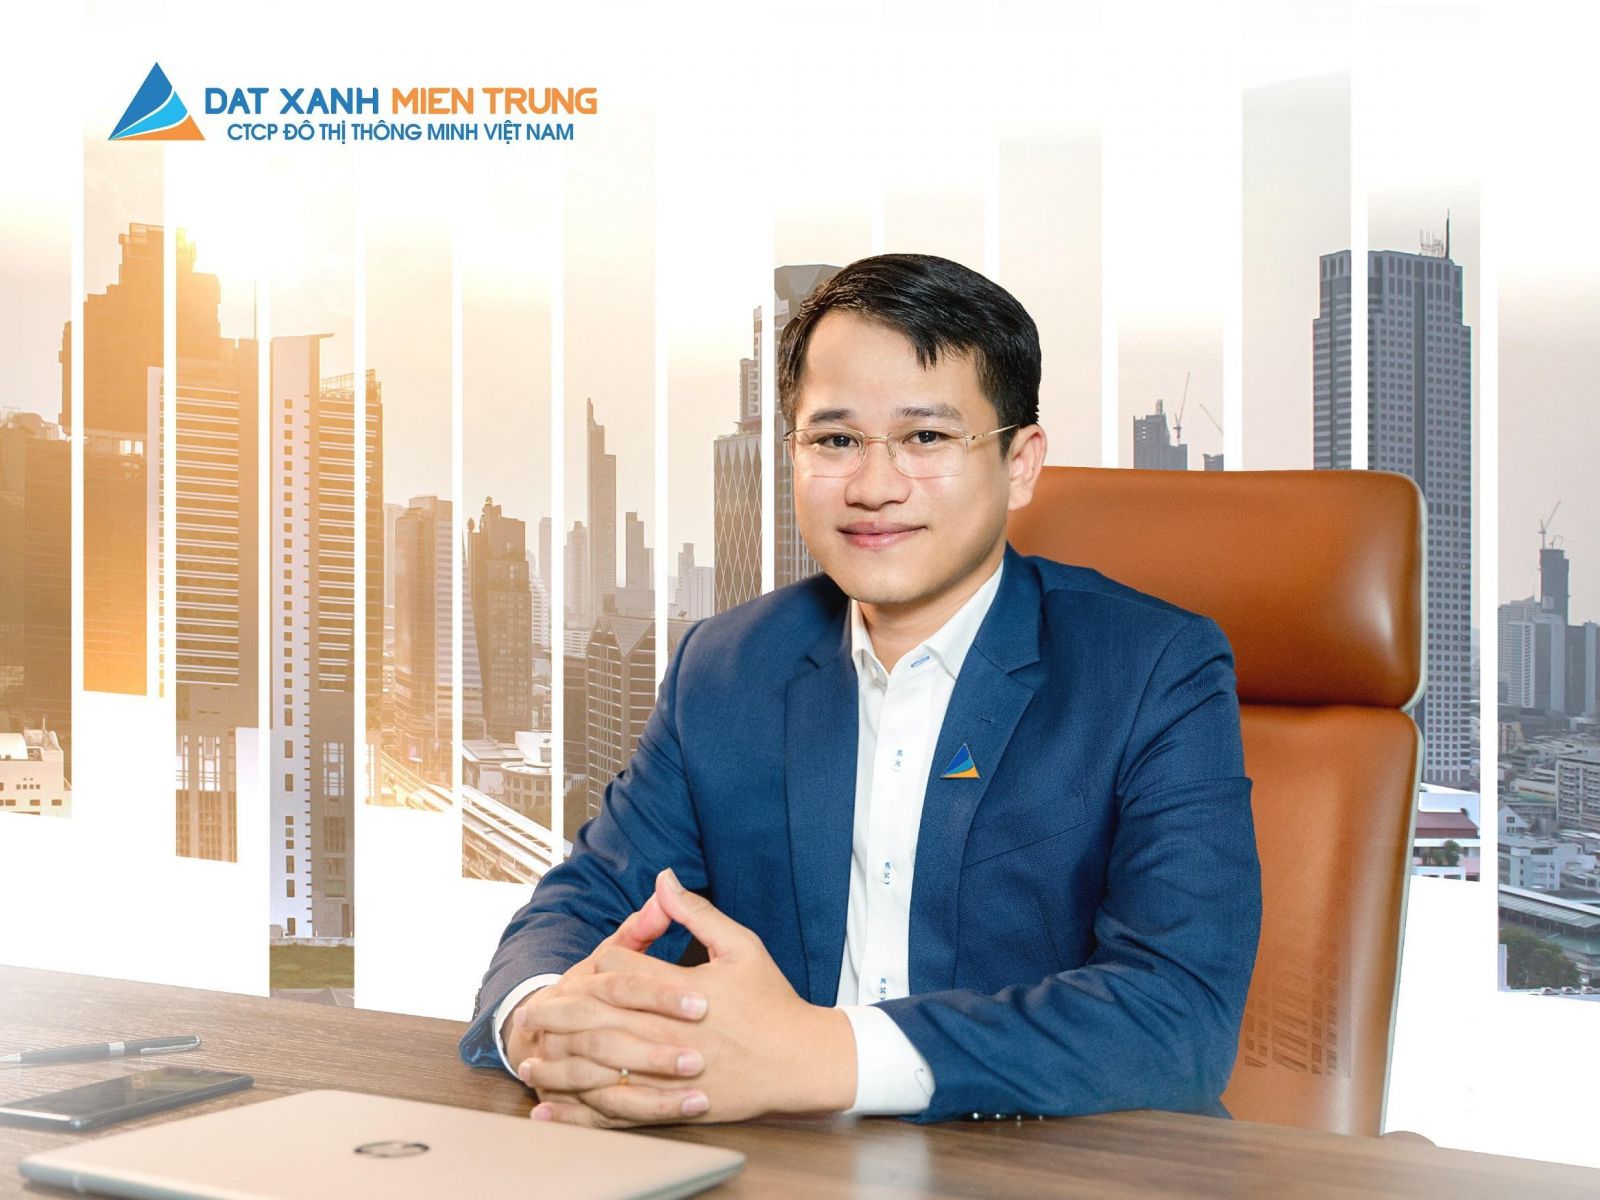 TÂM THƯ CEO TRẦN XUÂN THÔNG GỬI NHÂN VIÊN TRONG MÙA DỊCH - Viet Nam Smart City